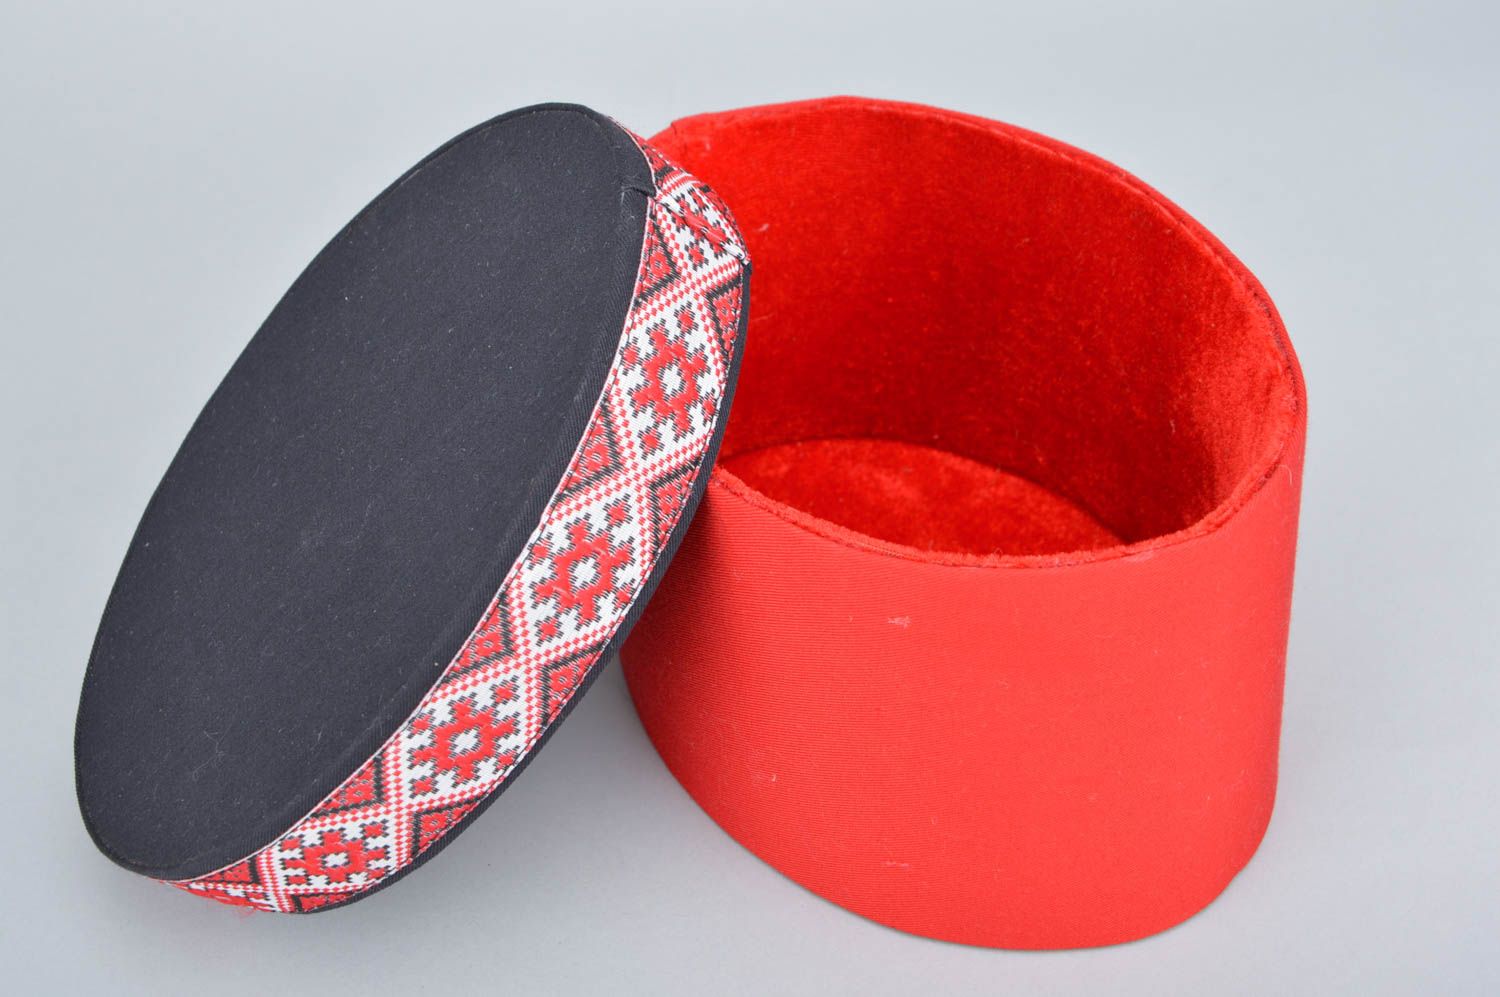 Caixinha revestida com tecido vermelha com padrões étnicos em forma oval  foto 3